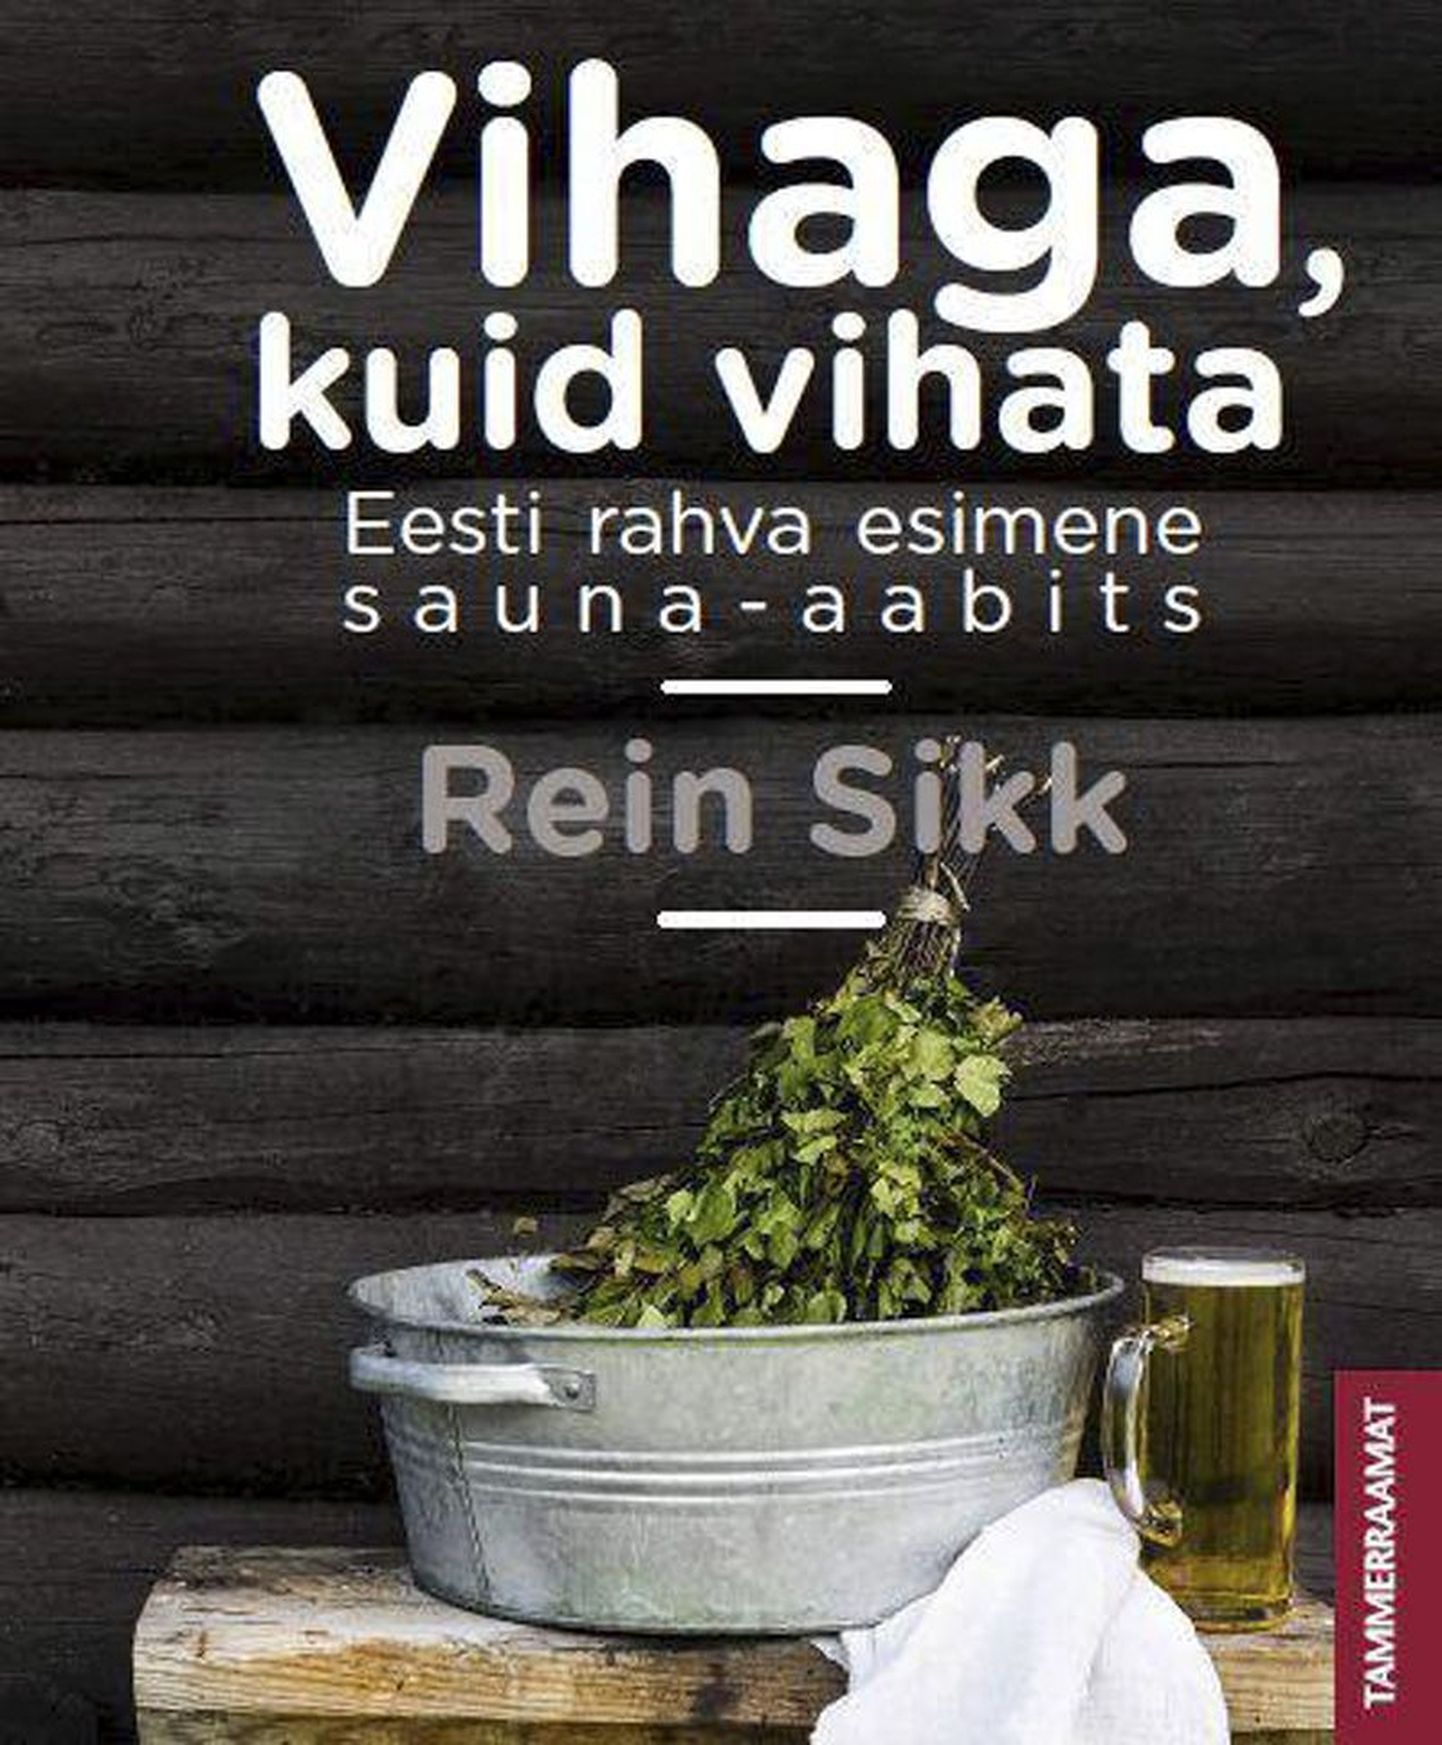 Rein Sikk “Vihaga, kuid vihata. Eesti rahva esimene sauna-aabits”. Tammerraamat, 2015. 175 lk.